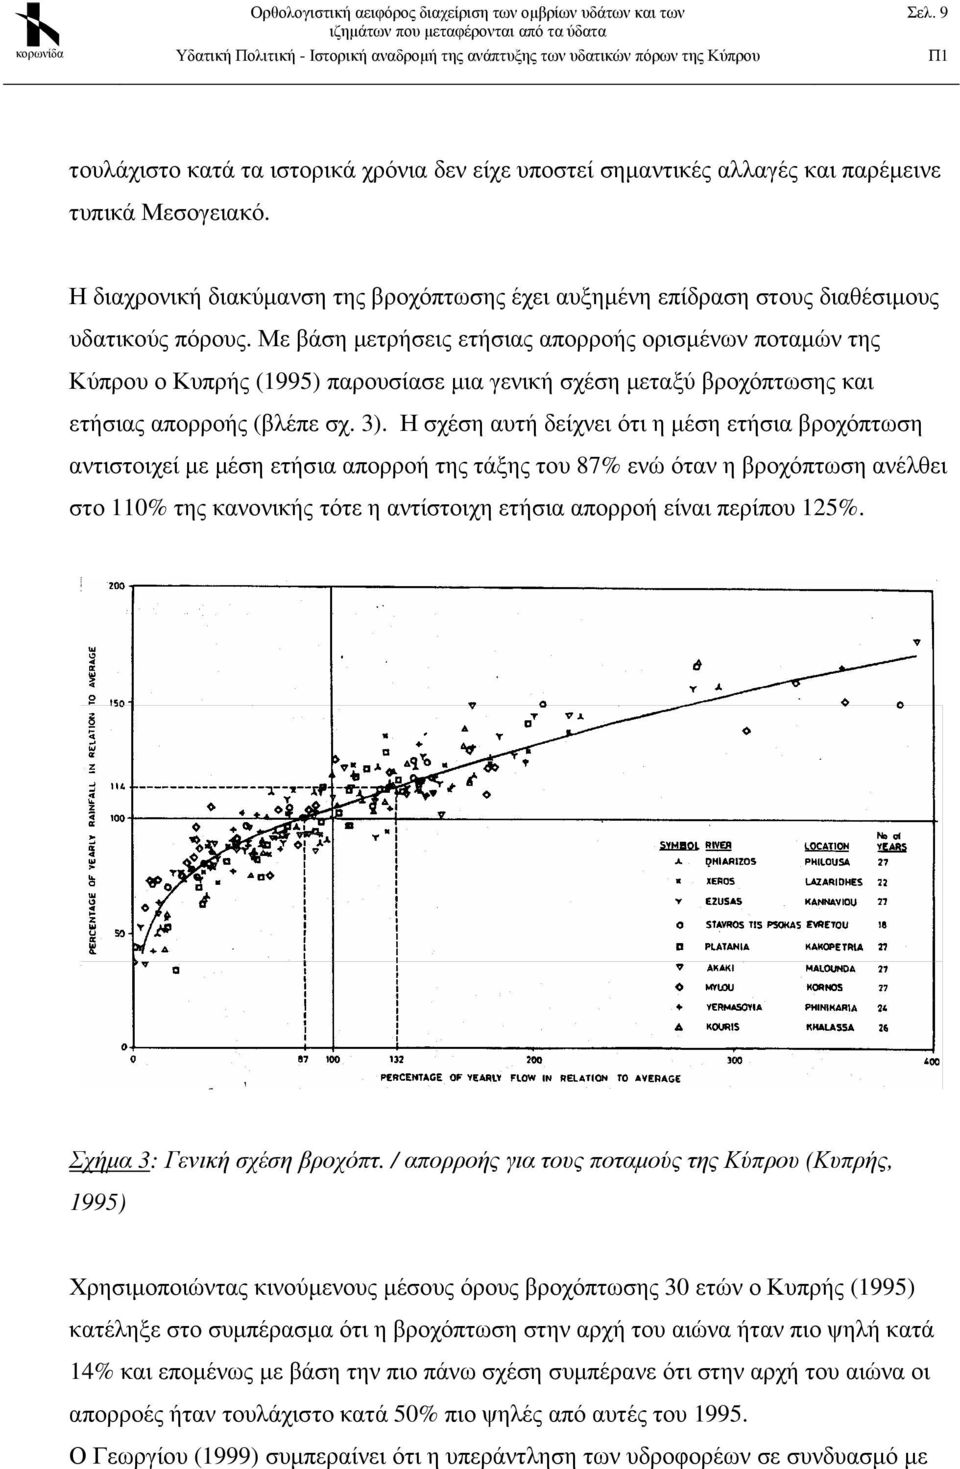 Με βάση µετρήσεις ετήσιας απορροής ορισµένων ποταµών της Κύπρου ο Κυπρής (1995) παρουσίασε µια γενική σχέση µεταξύ βροχόπτωσης και ετήσιας απορροής (βλέπε σχ. 3).